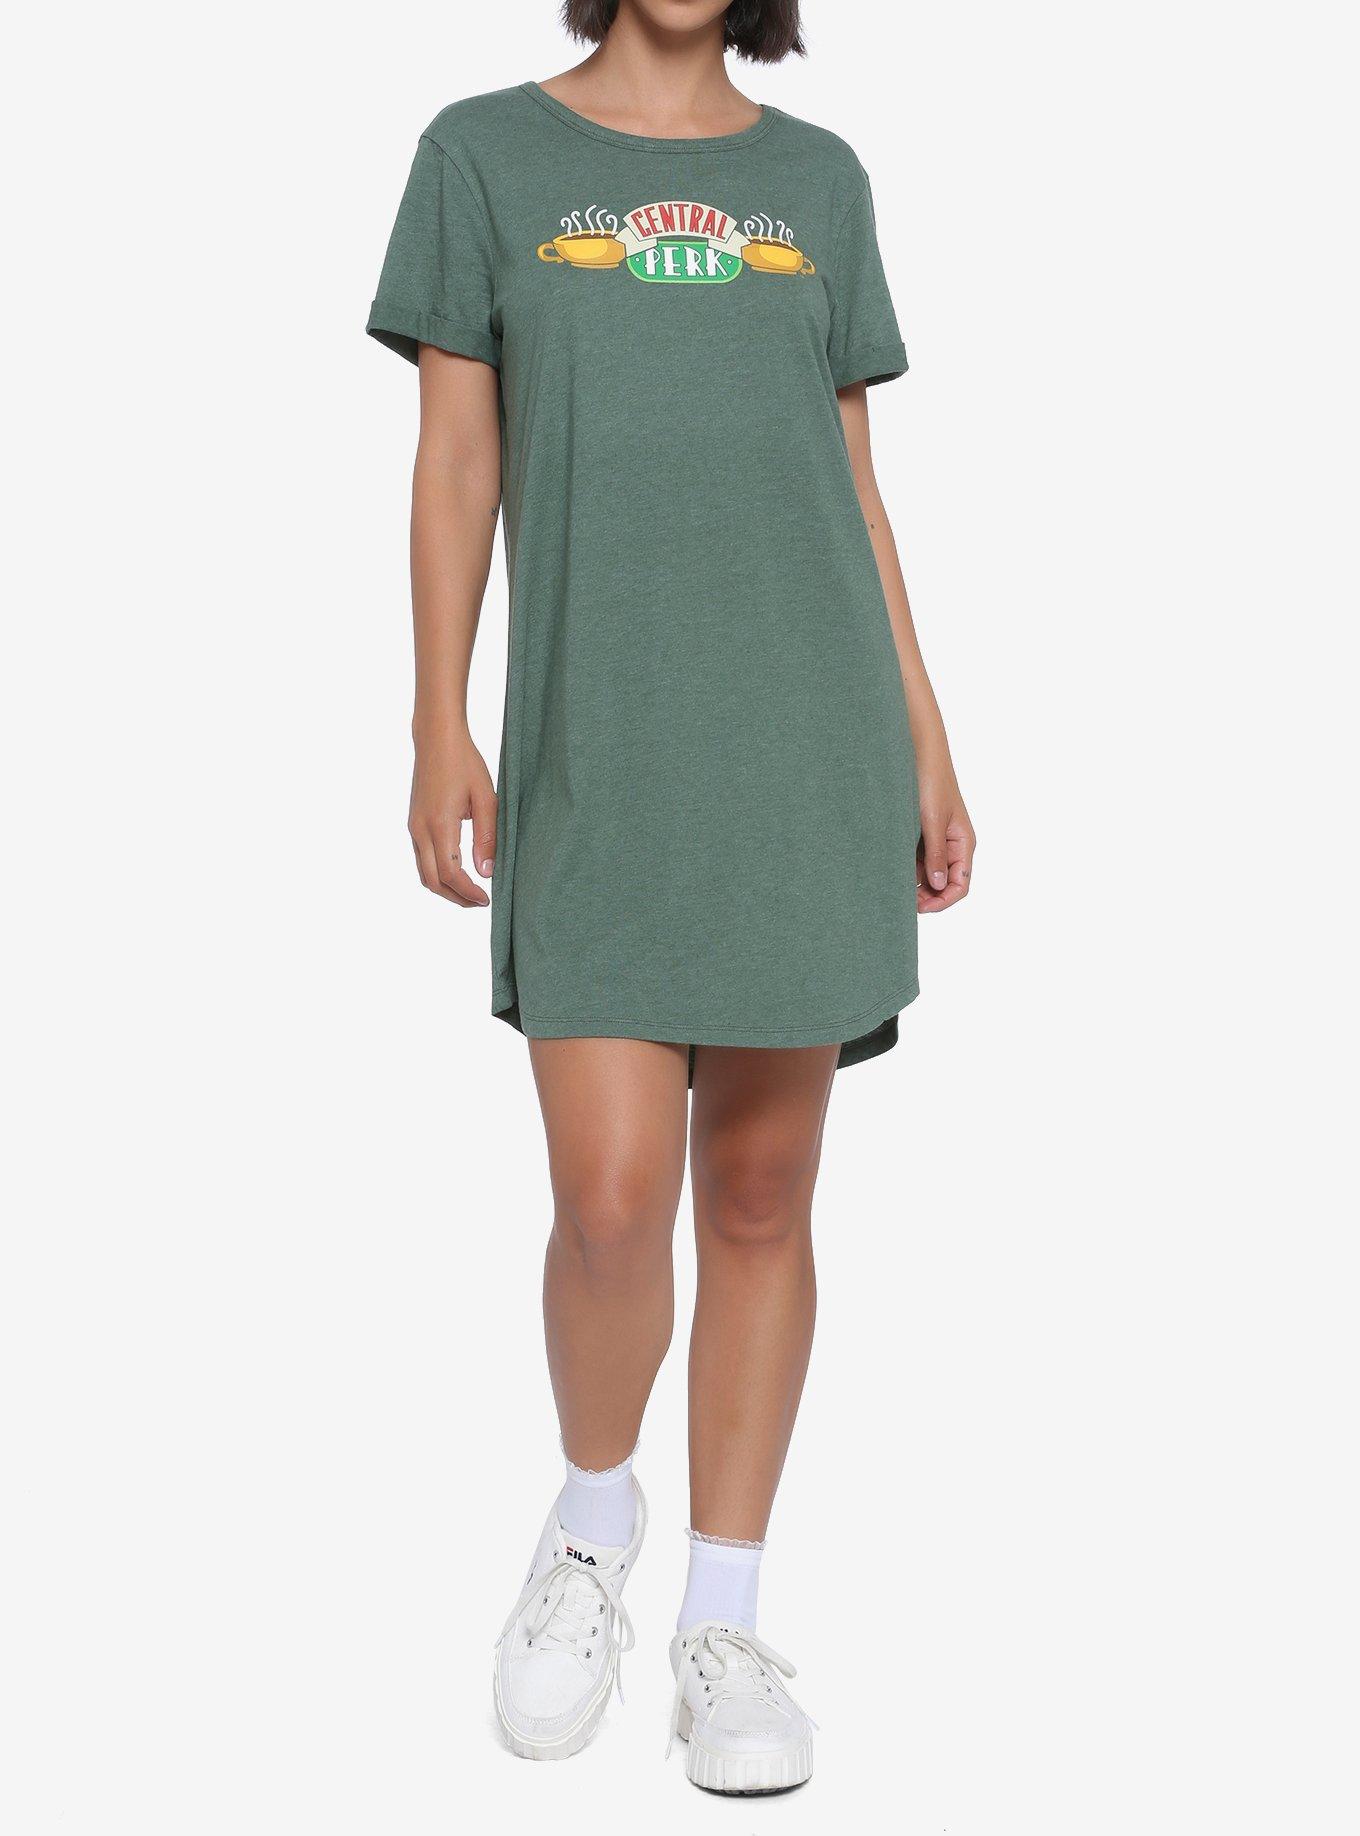 Friends Central Perk T-Shirt Dress, GREEN HEATHER, alternate